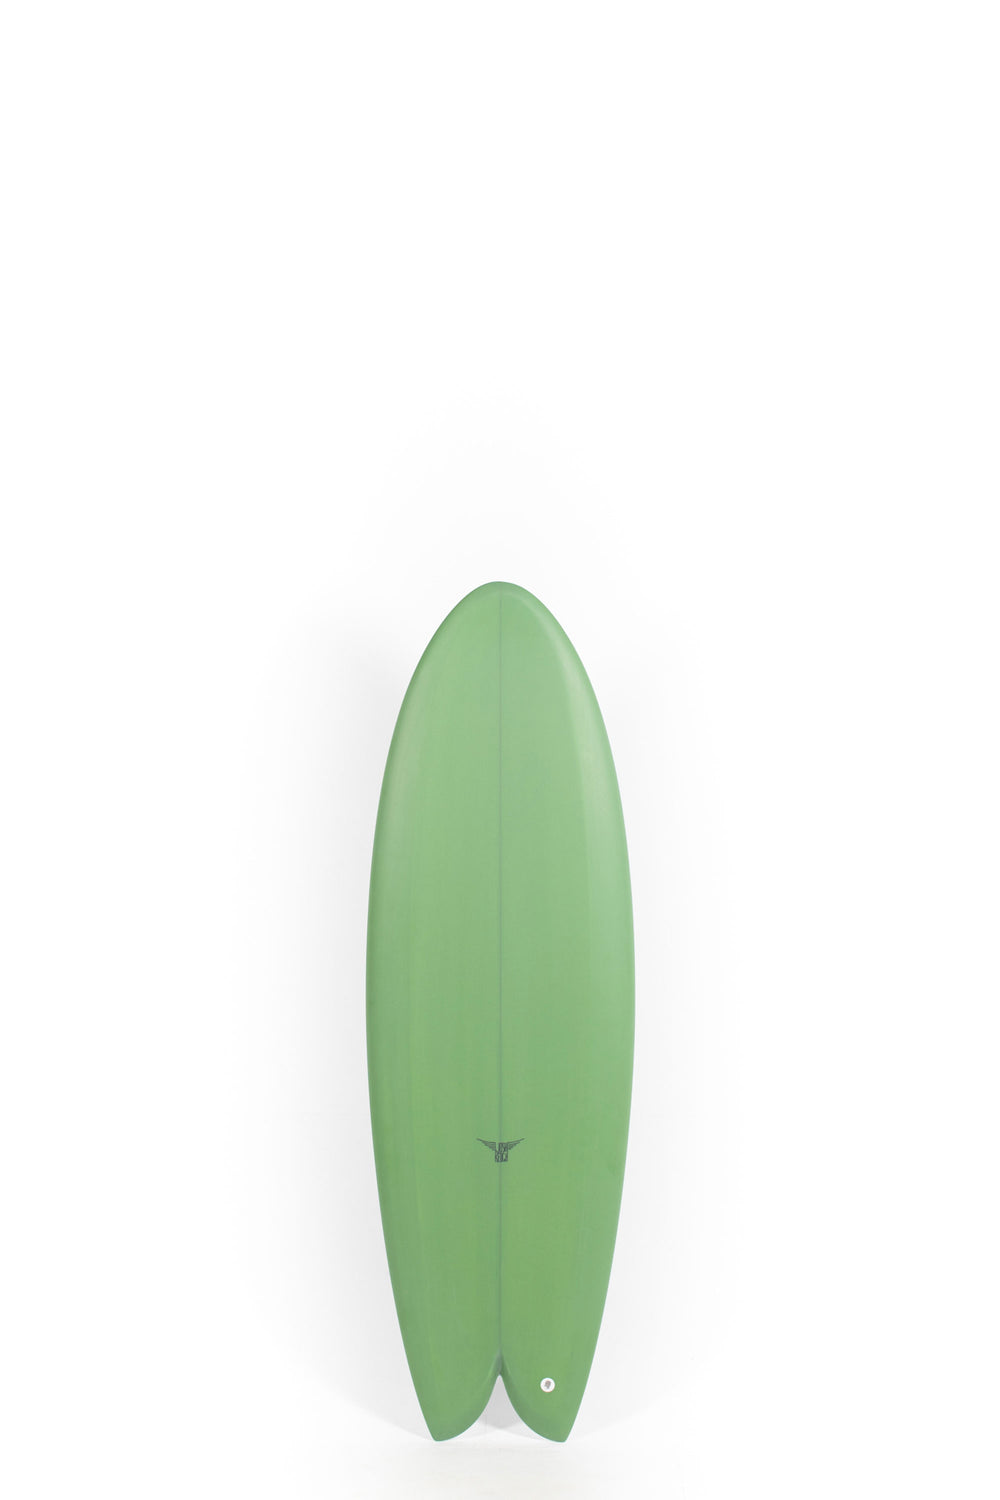 Joshua Keogh Surfboard - MONAD by Joshua Keogh - 5'5